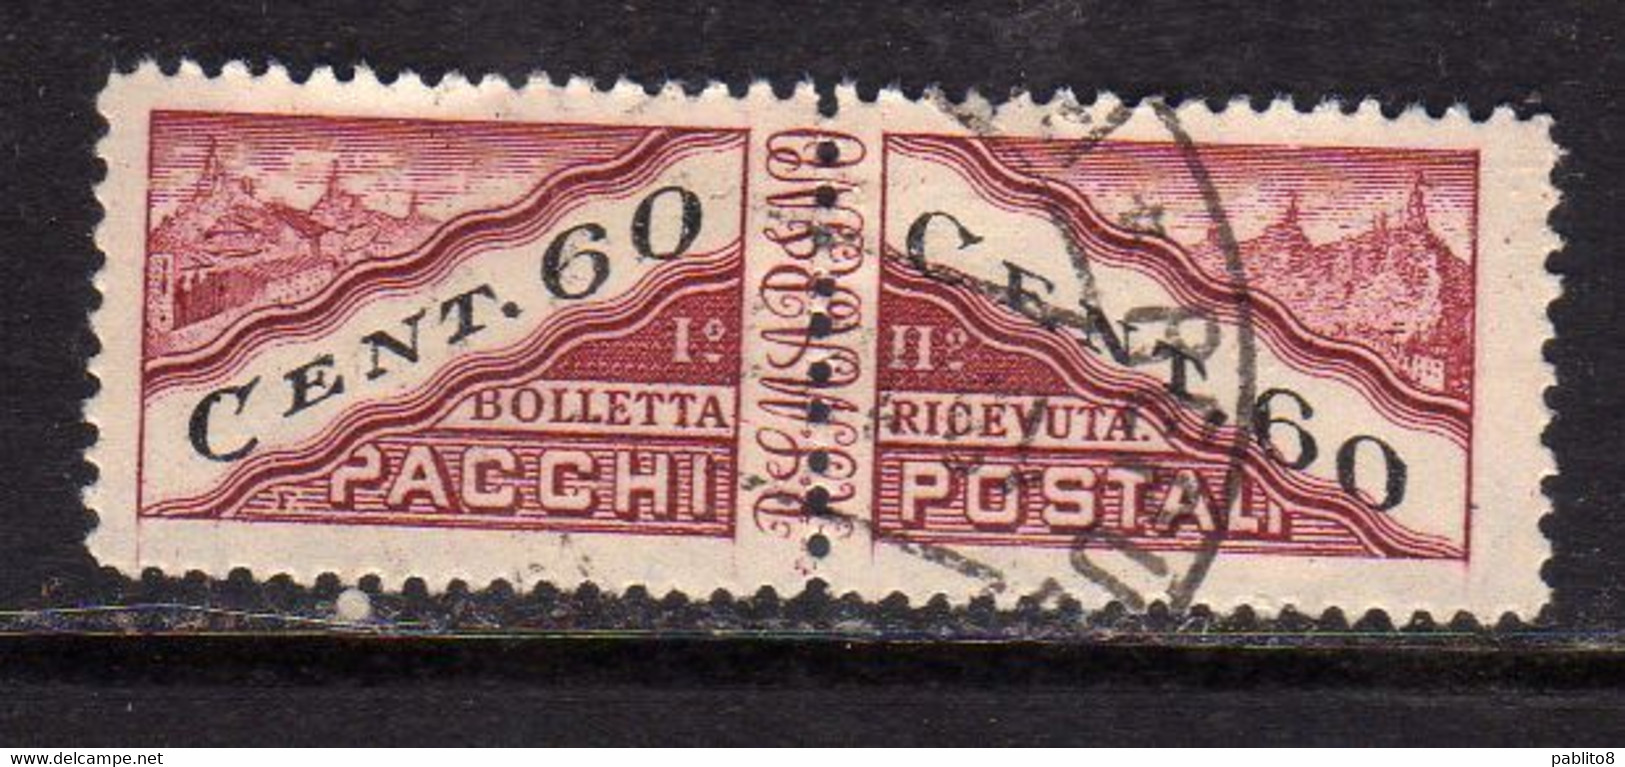 REPUBBLICA DI SAN MARINO 1945 PACCHI POSTALI PARCEL POST CENT. 60c USATO USED OBLITERE' - Parcel Post Stamps